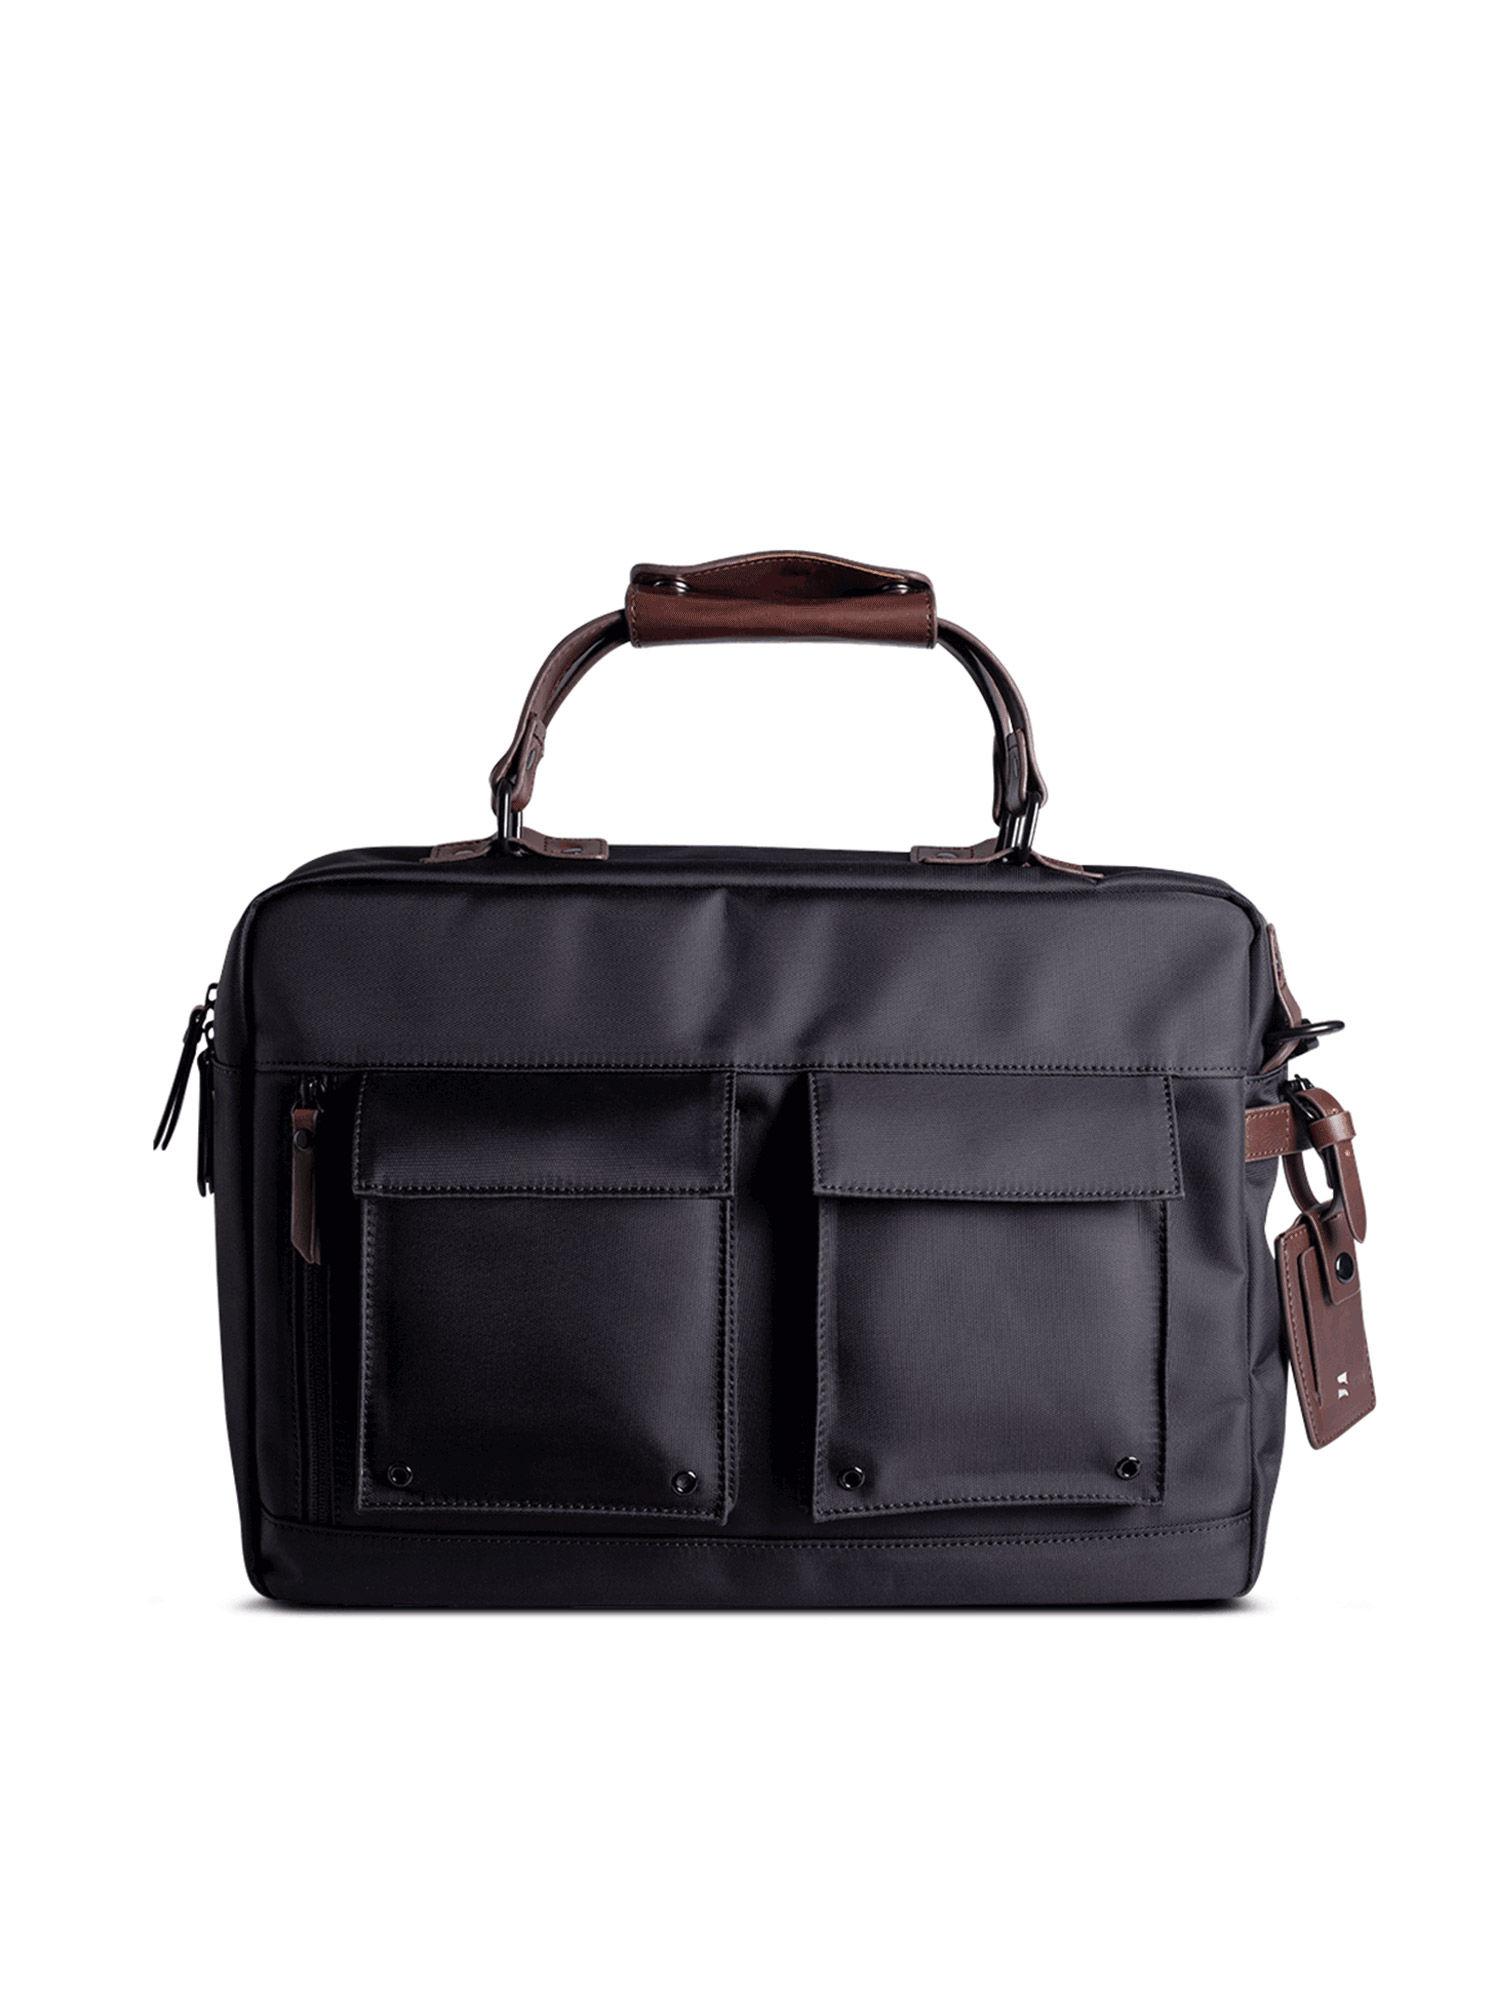 informal 2.0, 15 inch splash-proof laptop messenger bag with trolley sleeve jet black